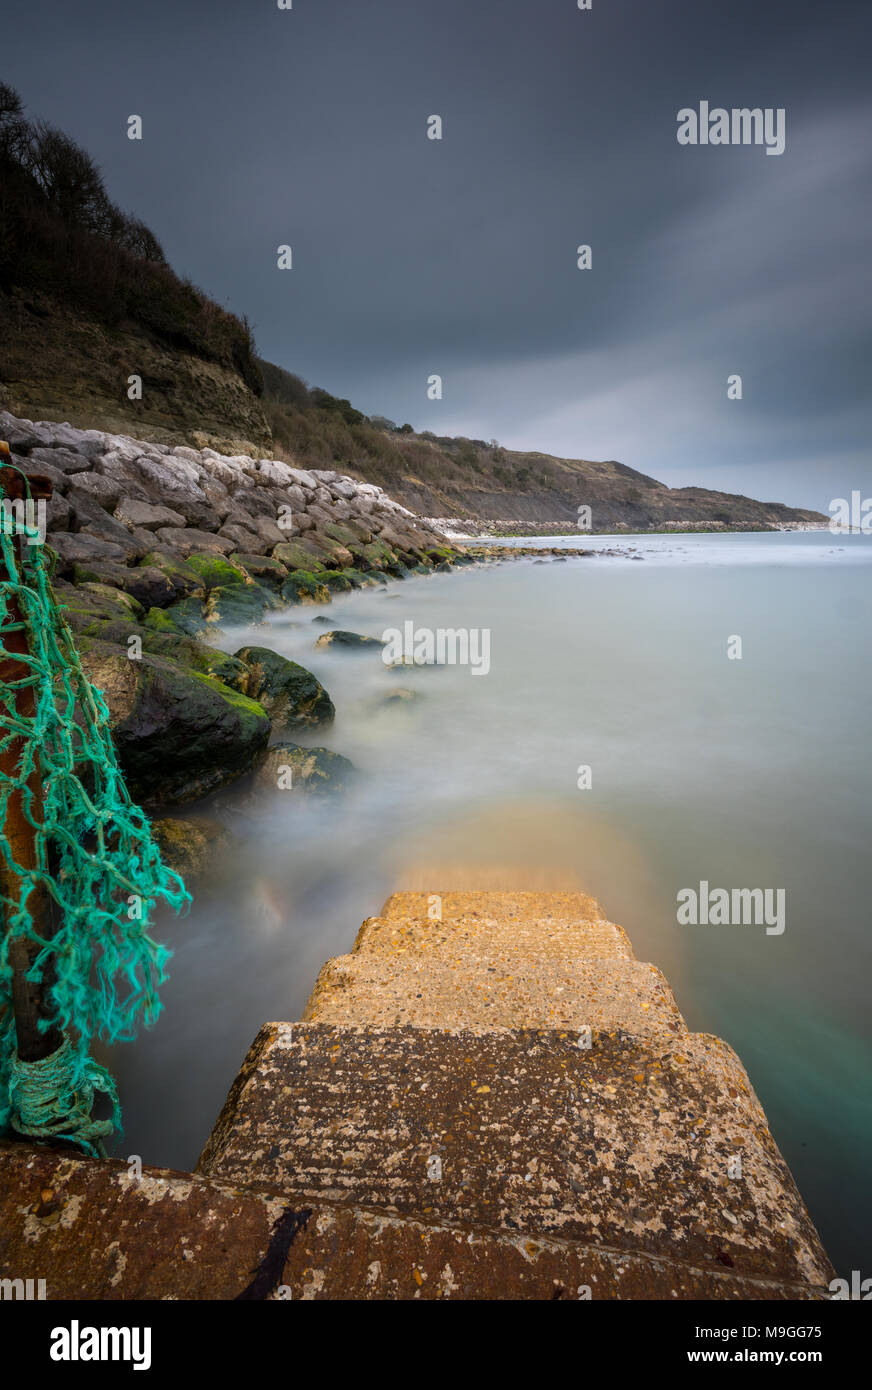 Un pittoresco e bello etereo atmosferica seascape dell'Isola di Wight costa con un cielo tempestoso e previsioni del tempo di chiusura anteriore in al di sopra del mare Foto Stock